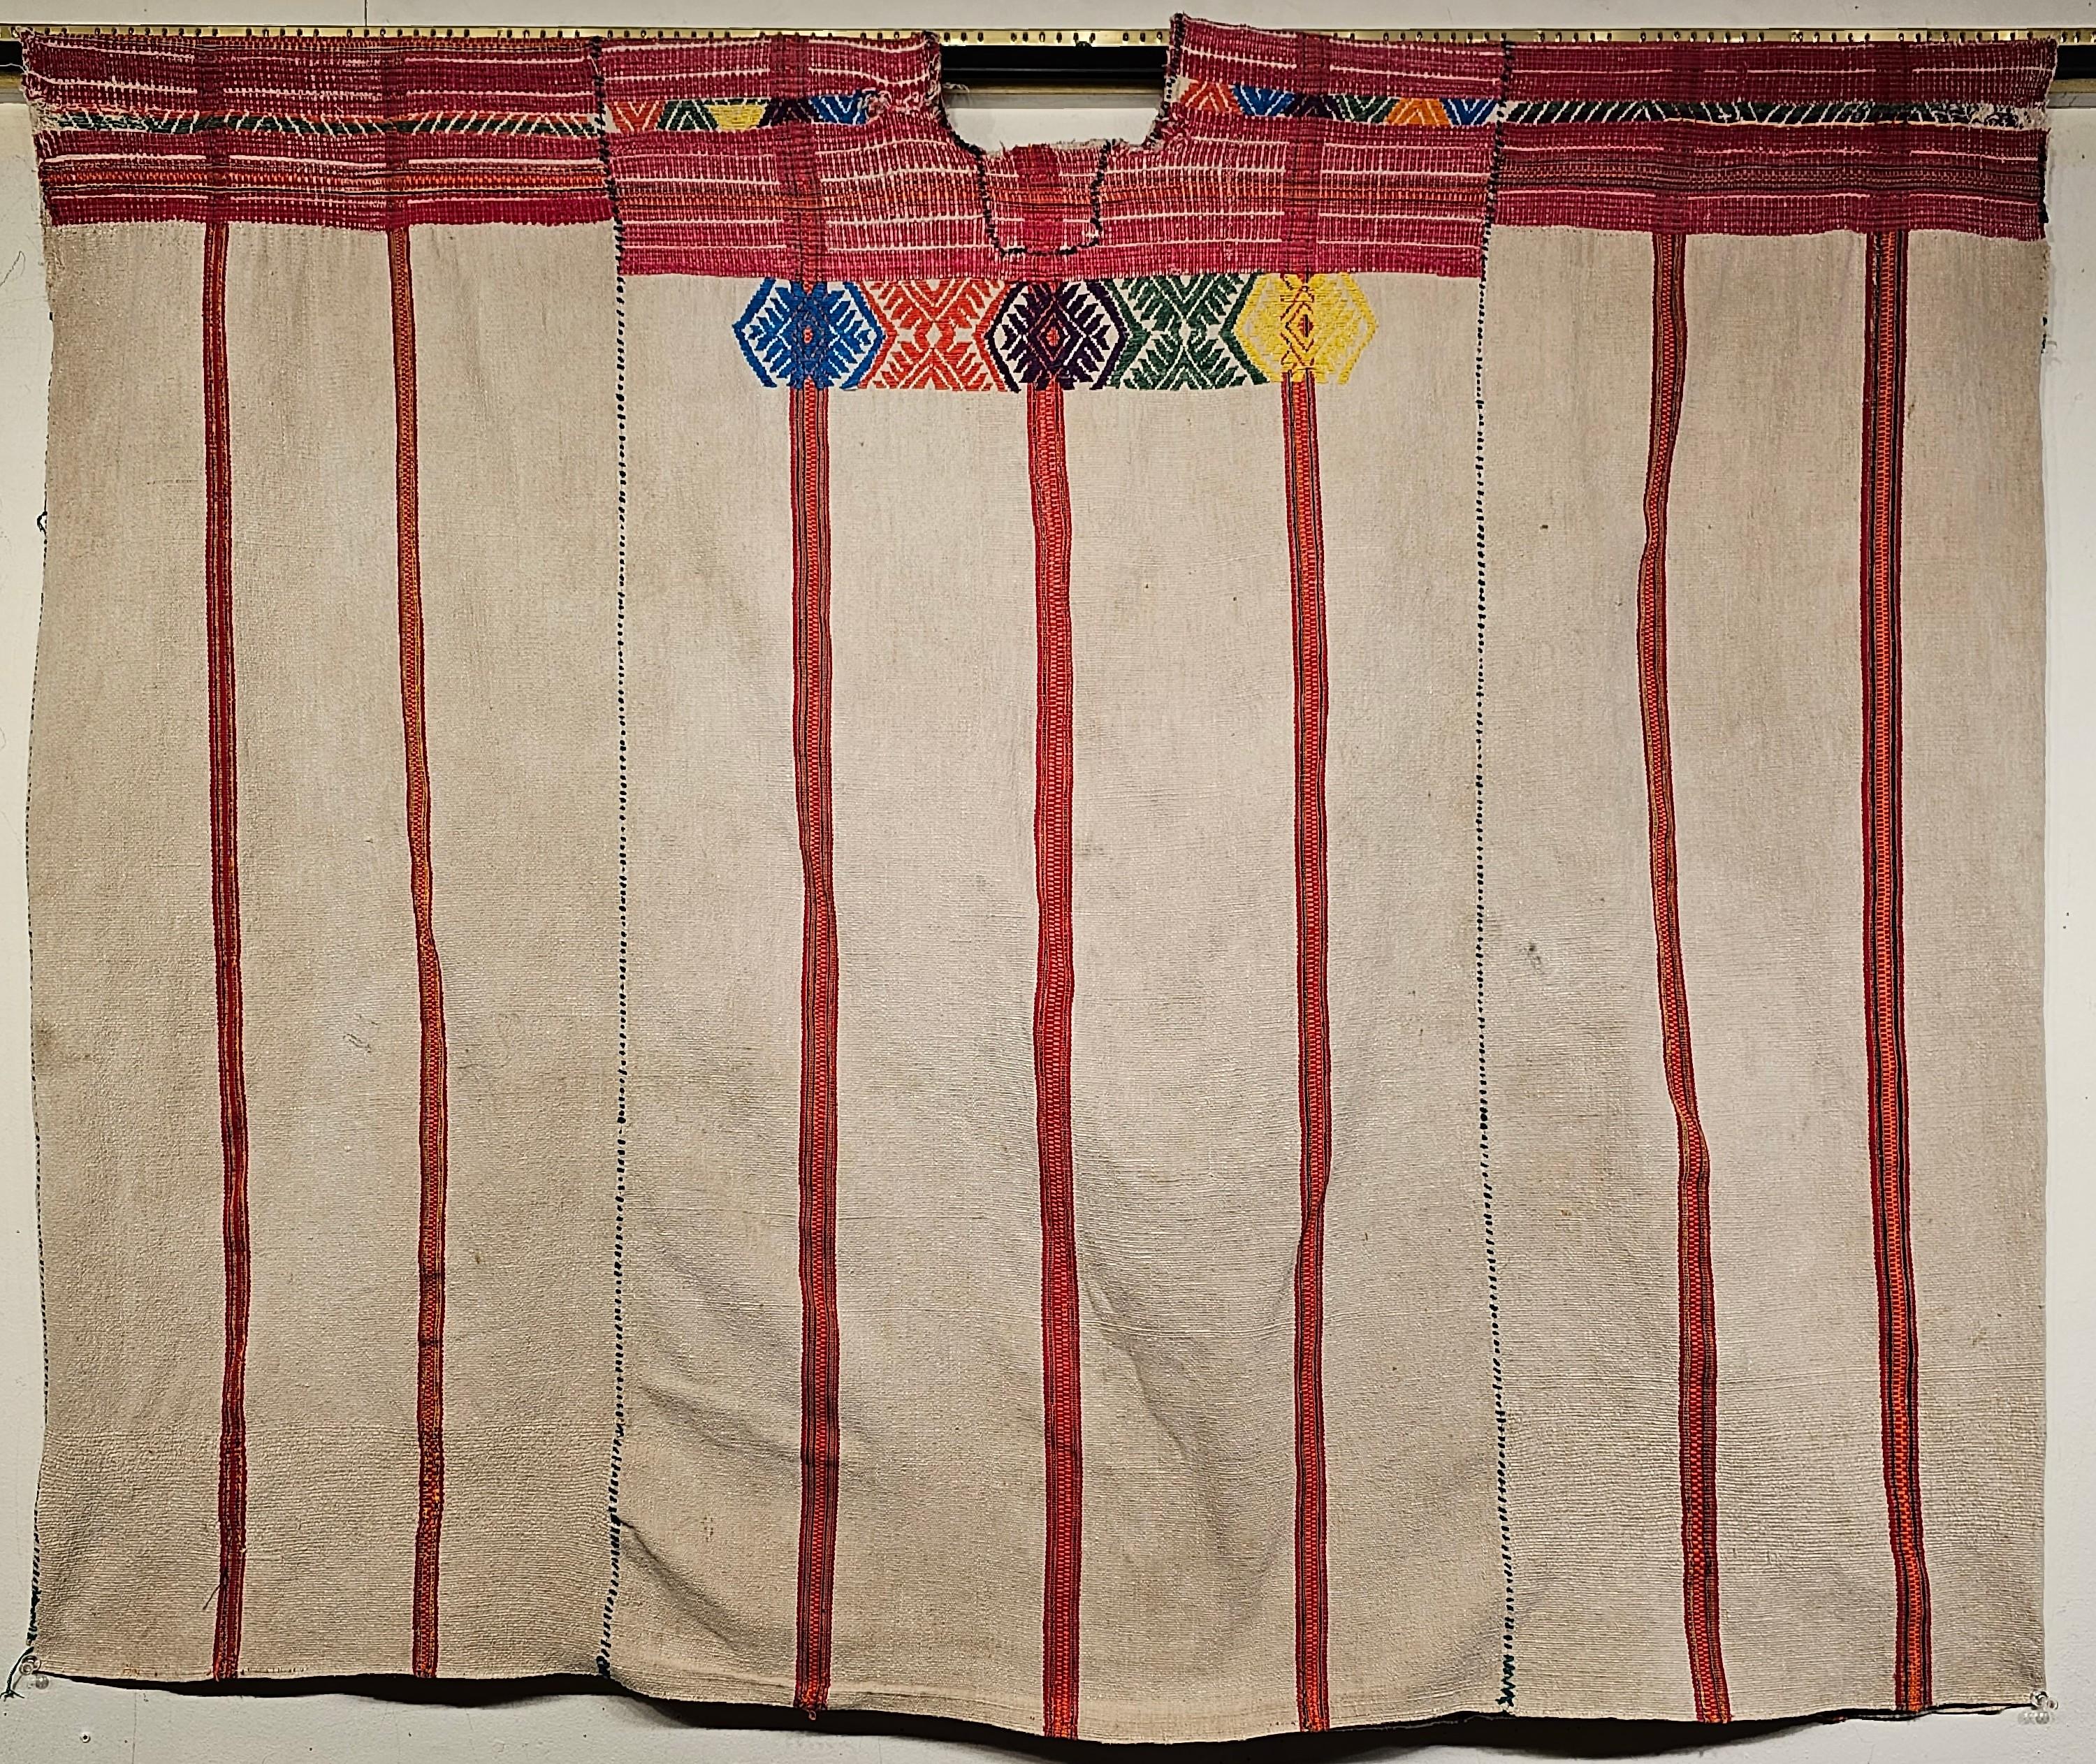 Handgewebter südamerikanischer Vintage-Textilstoff in Form eines Ponchos aus der Mitte des 20. Jahrhunderts.  Das Stück wird durch das Zusammennähen von drei einzeln gewebten Textilstücken zu einem Poncho geformt.  Der obere Teil des Textils ist mit